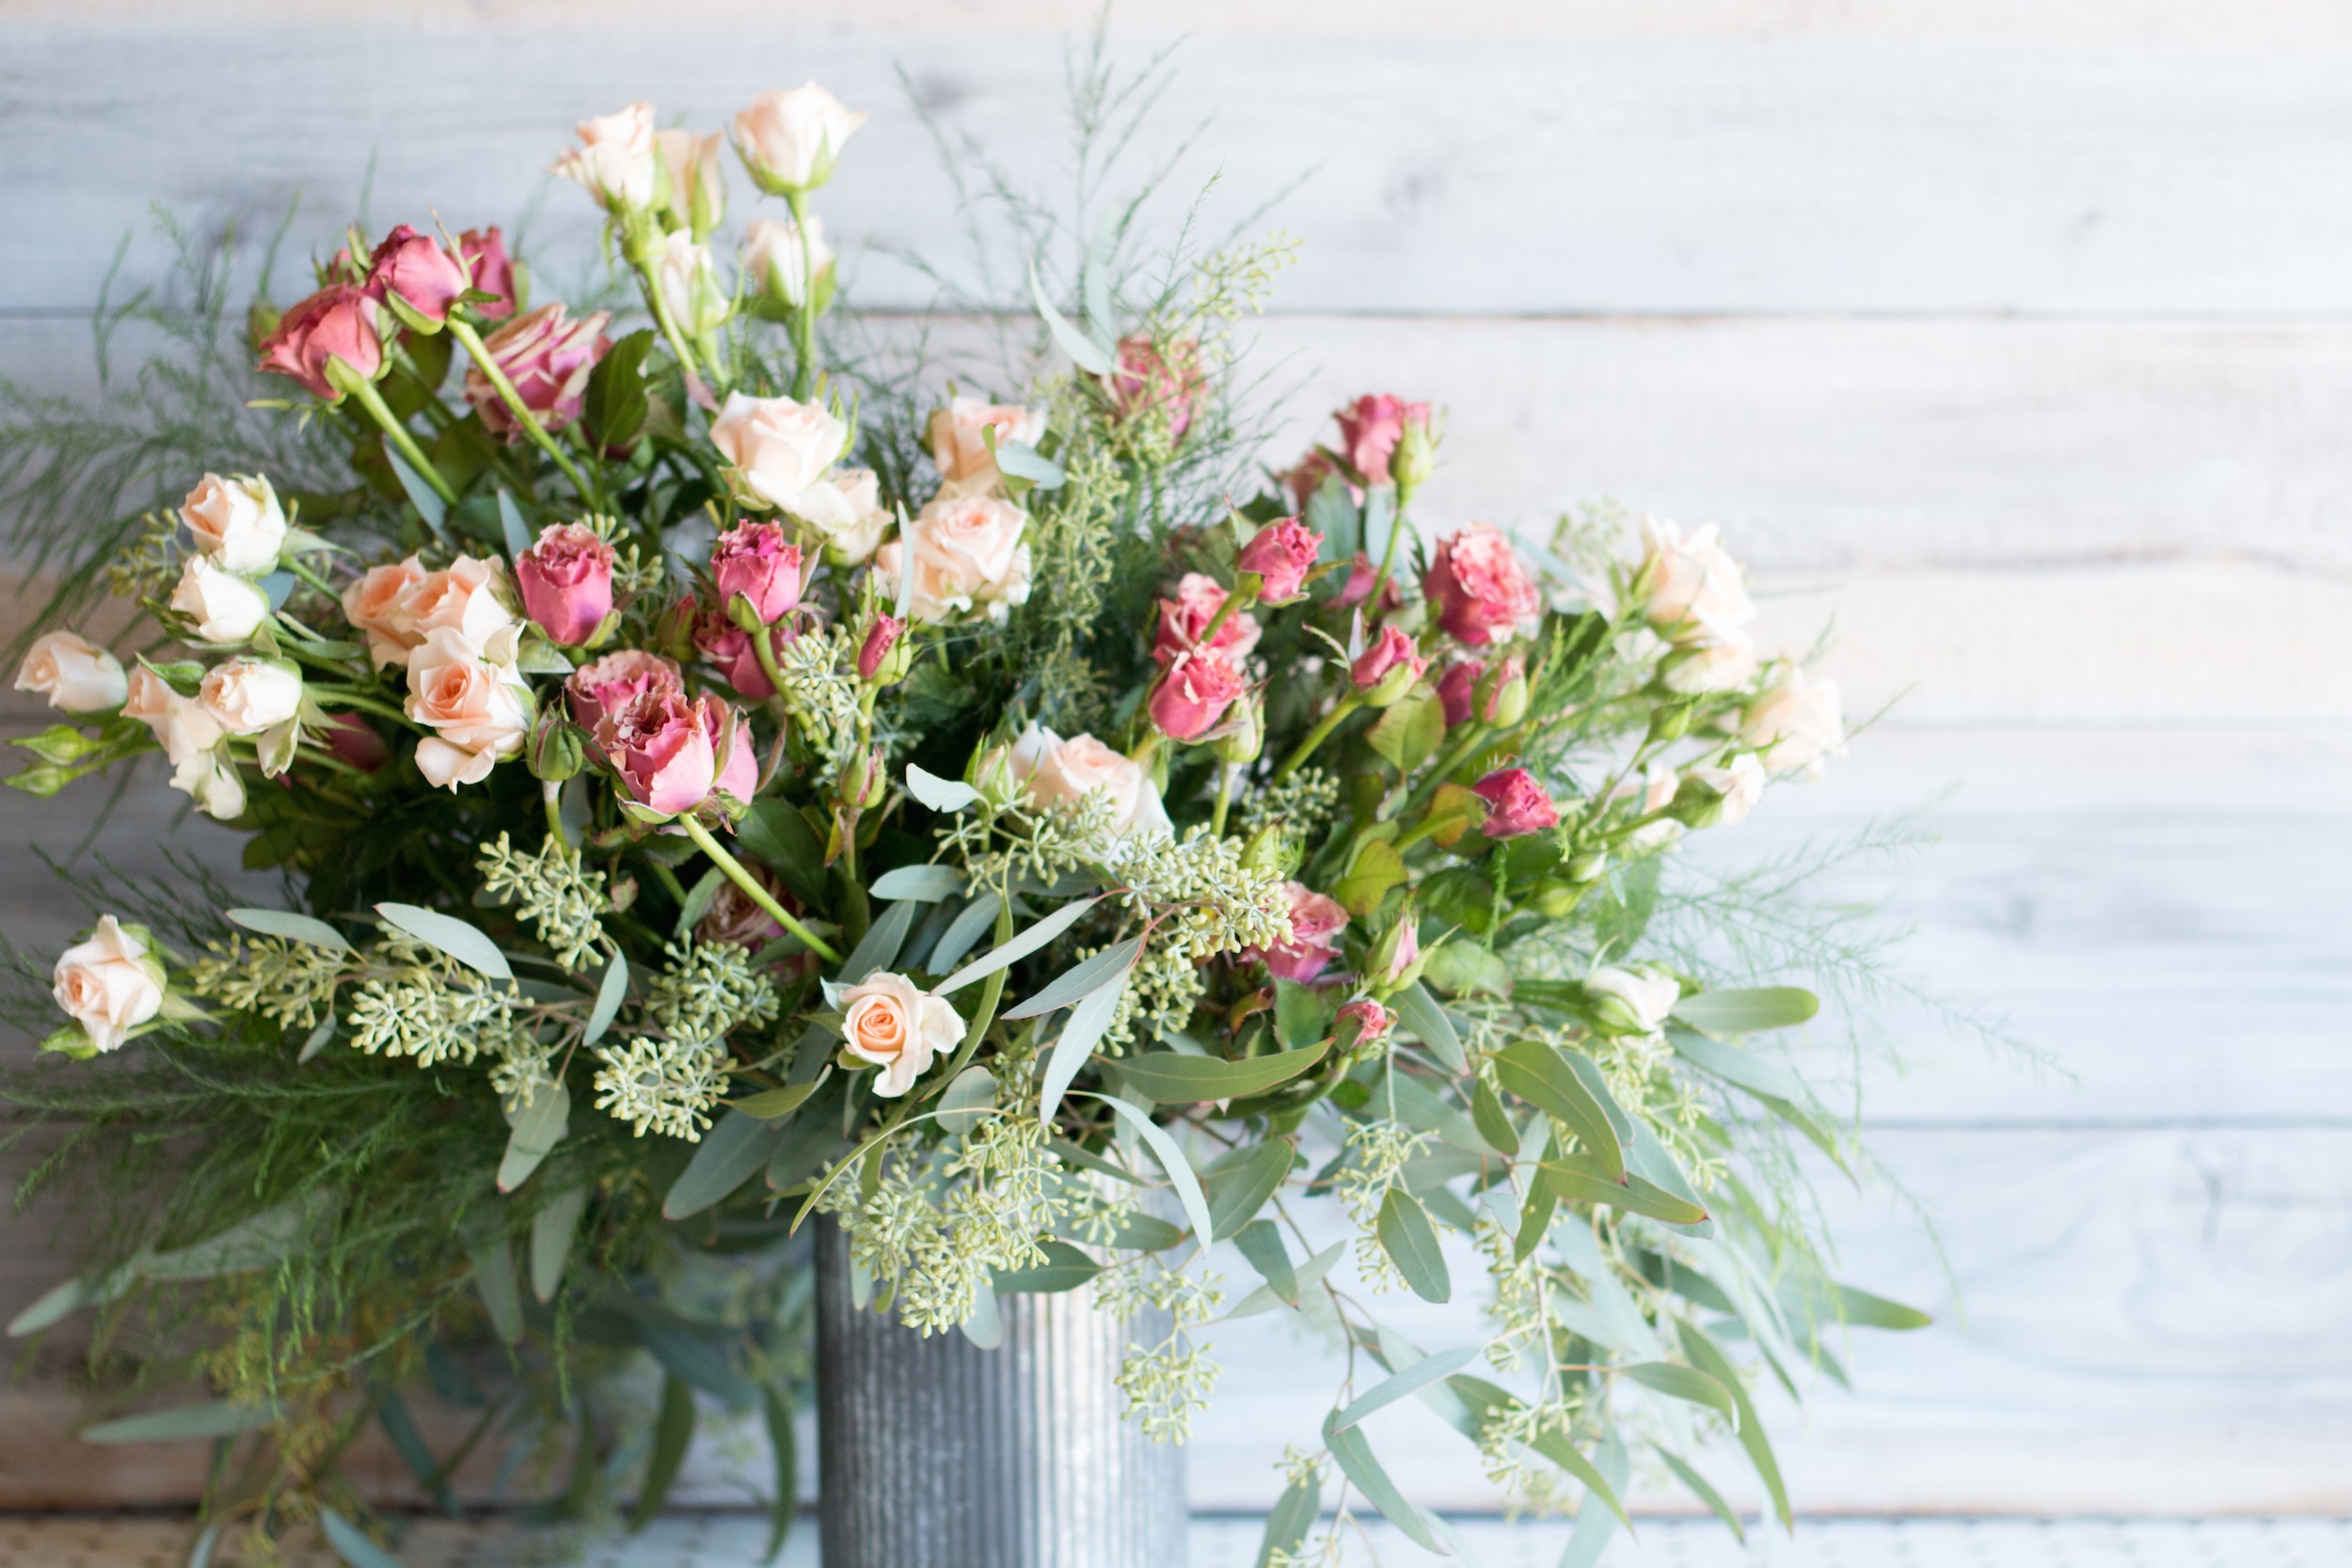 How To Arrange Flowers: 6 DIY Floral Arrangements | Architectural Digest